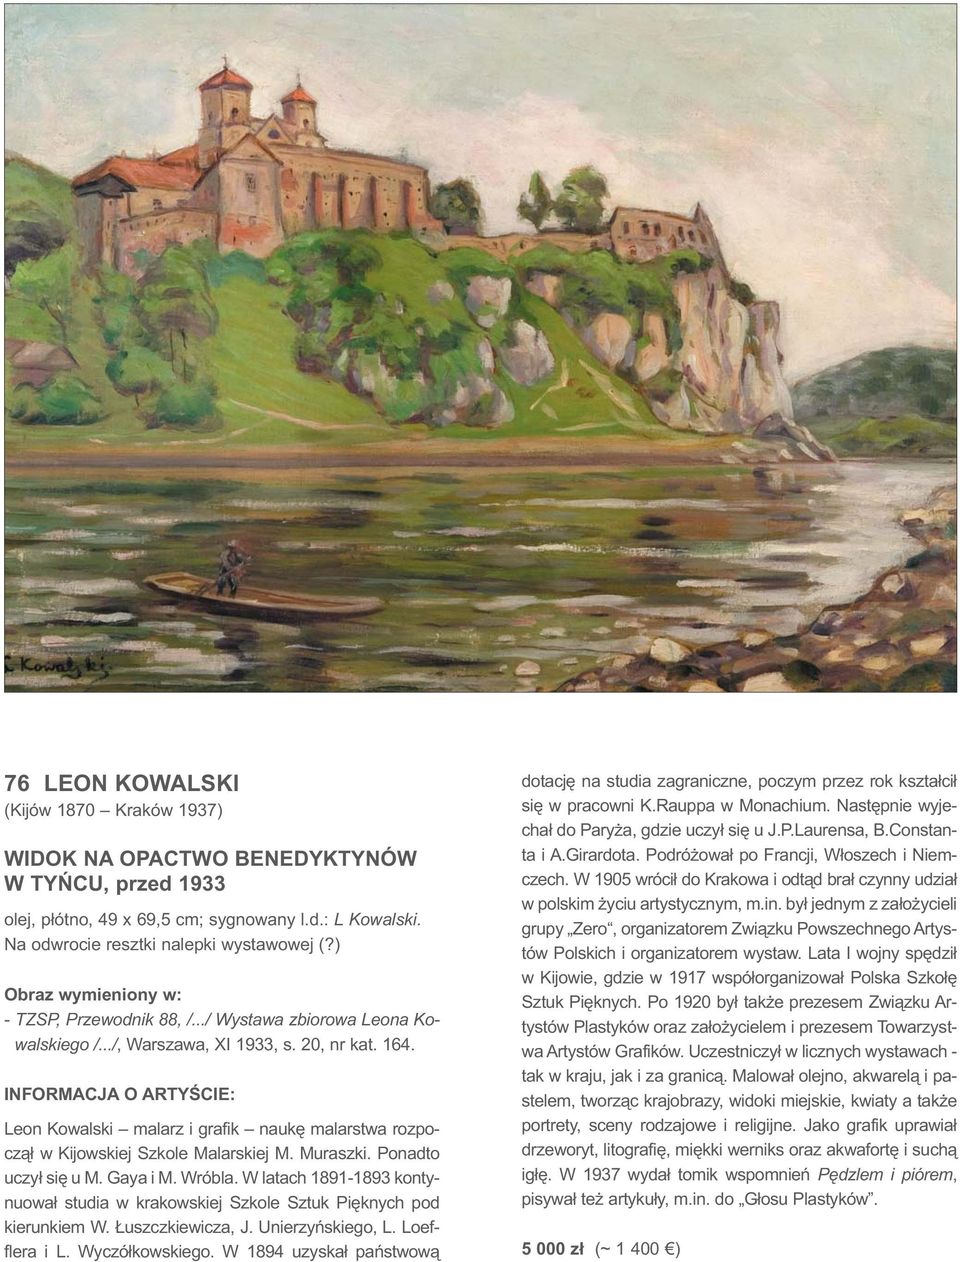 INFORMACJA O ARTYŚCIE: Leon Kowalski malarz i grafik naukę malarstwa rozpoczął w Kijowskiej Szkole Malarskiej M. Muraszki. Ponadto uczył się u M. Gaya i M. Wróbla.